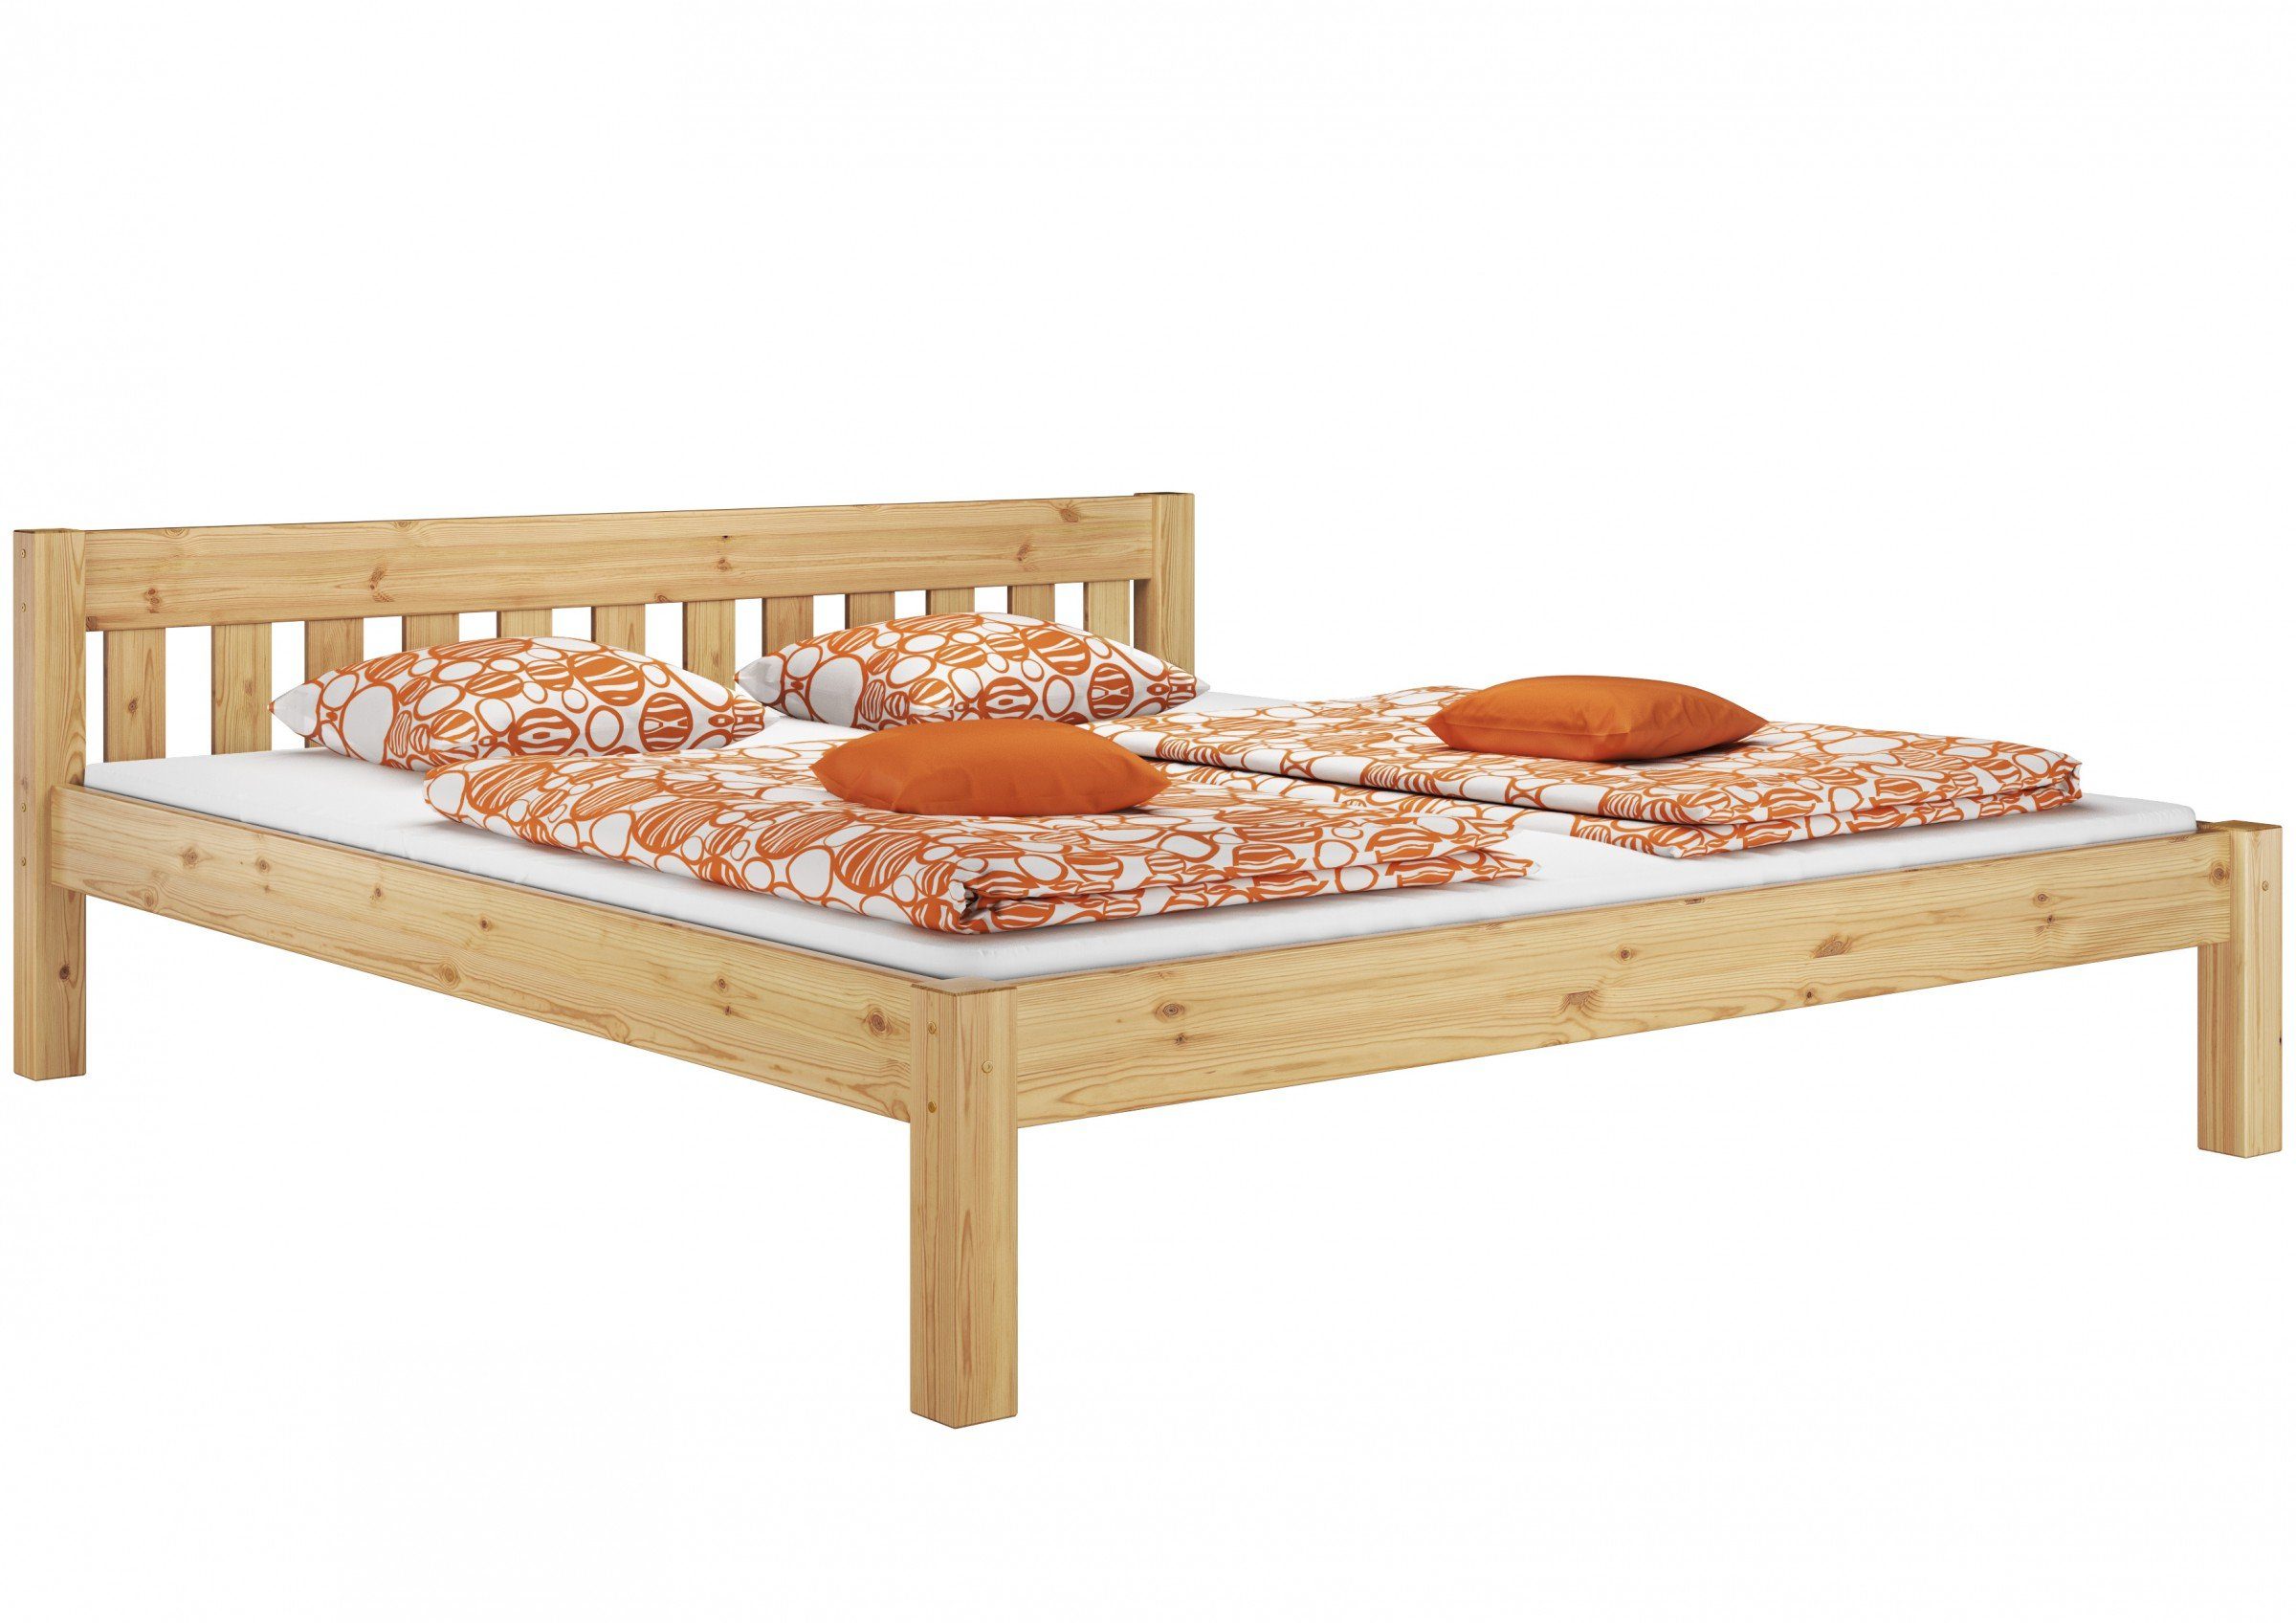 Rost Bett lackiert ERST-HOLZ zwei Matratzen 180x200, und mit Doppelbett Kieferfarblos